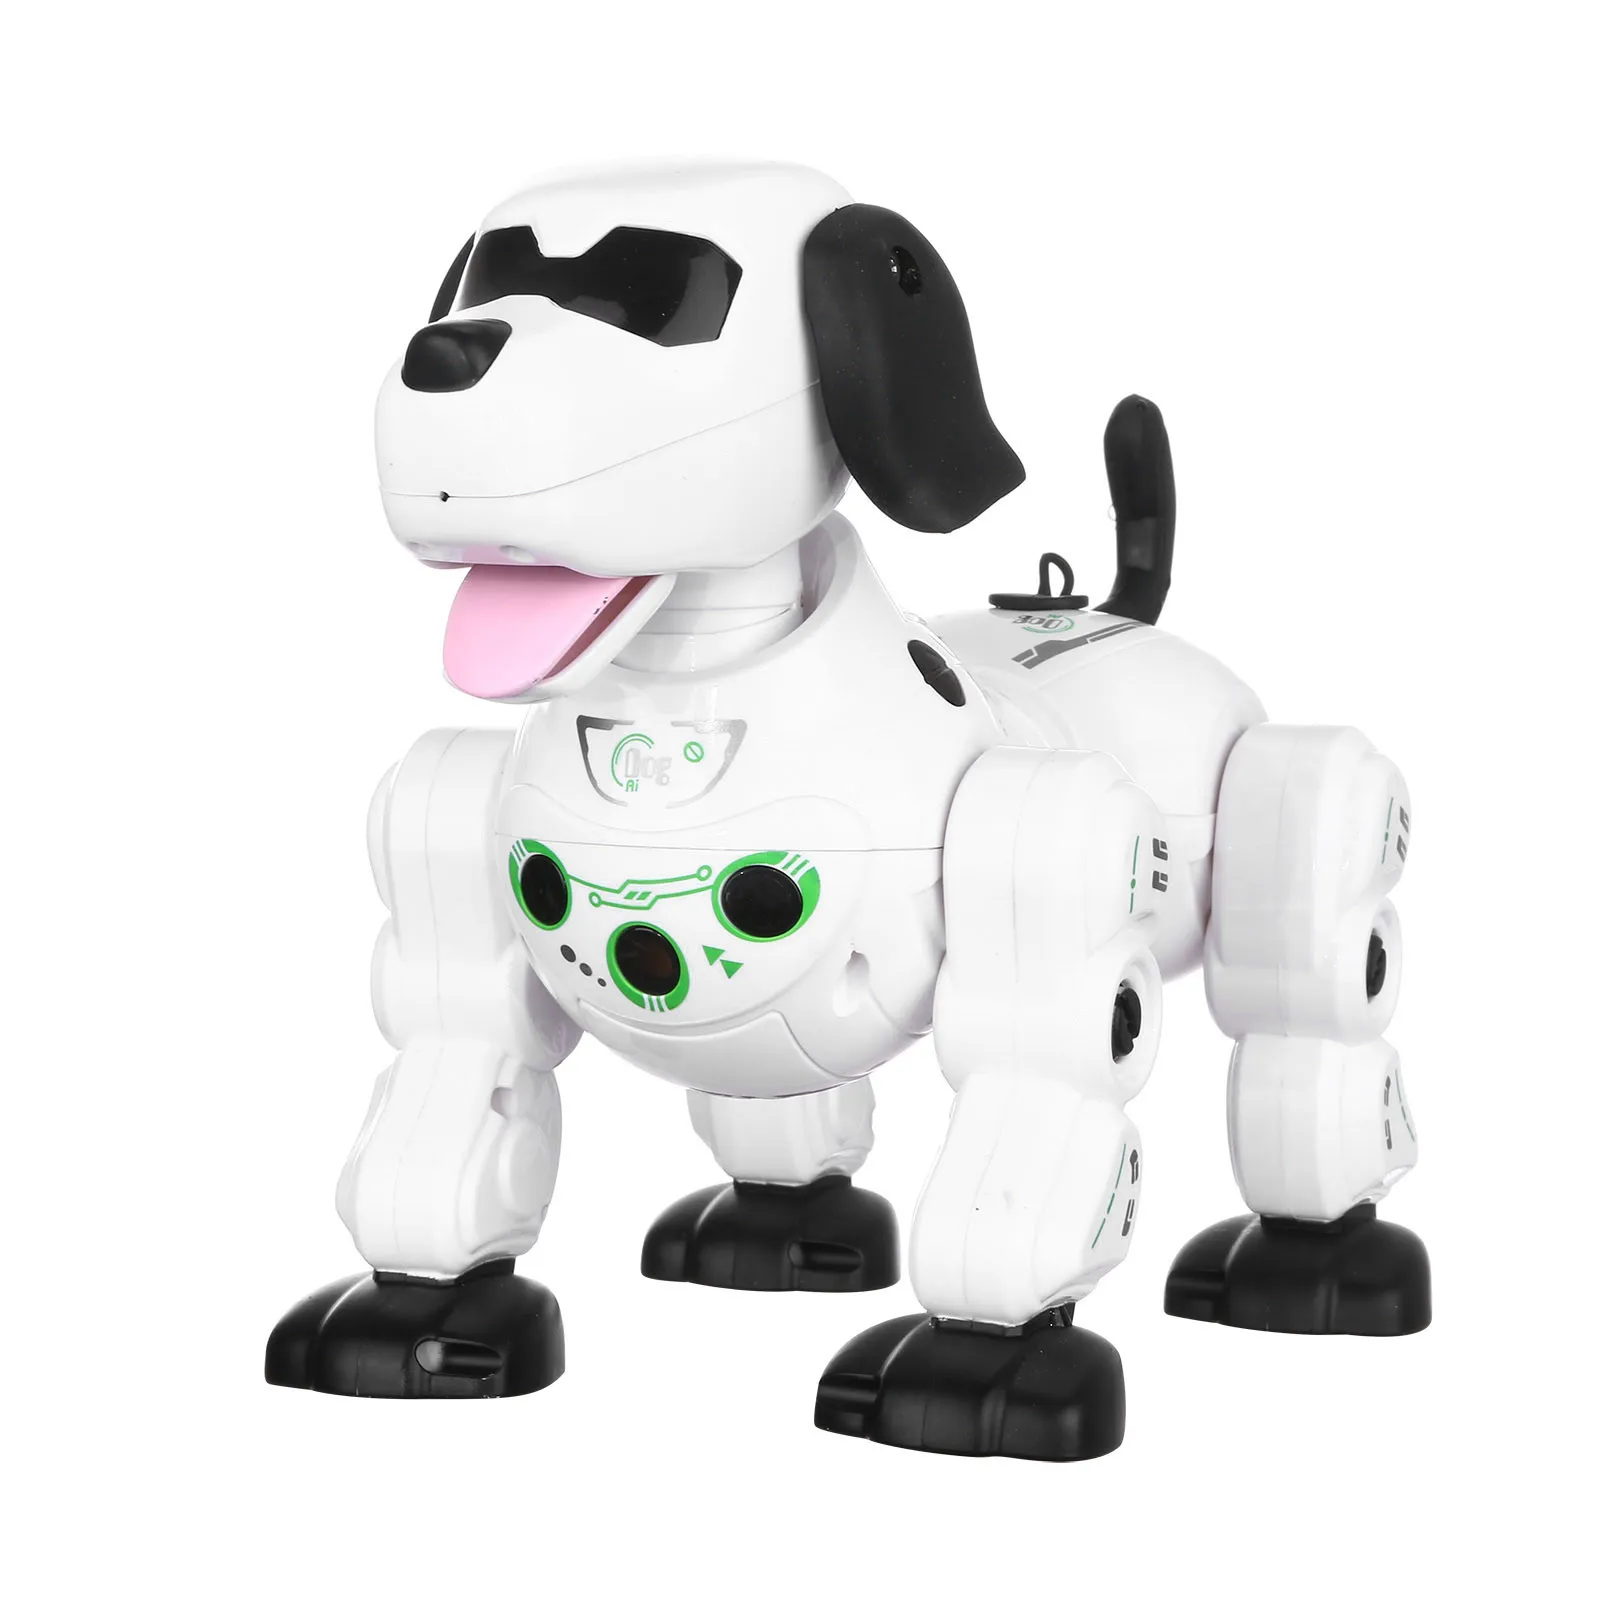 Sensore tattile di alta qualità Puppy 2.4G Robot Telecomando Giocattolo di intrattenimento robot intelligente bambini Accompagna i regali dei tuoi bambini